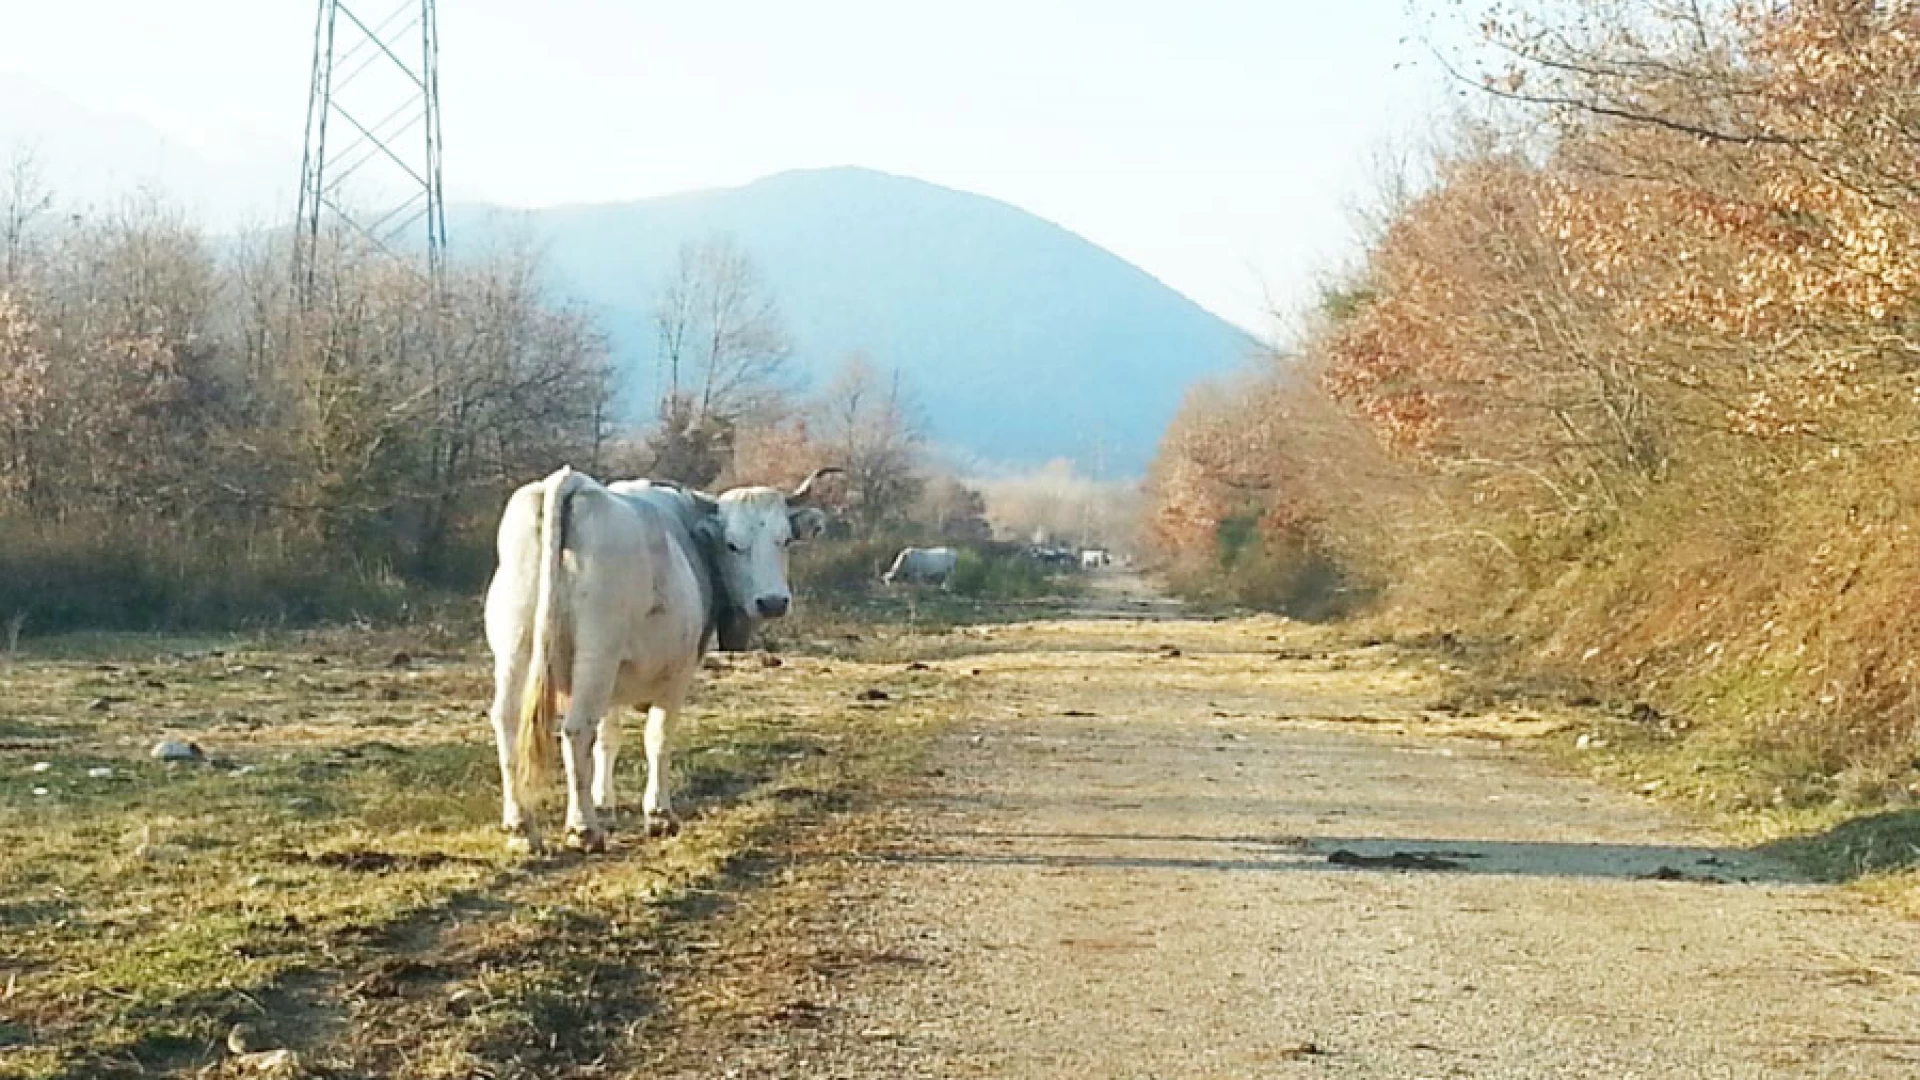 Colli a Volturno: il mandriano, le sue vacche e la strada impraticabile. La storia assurda di Valle Porcina.